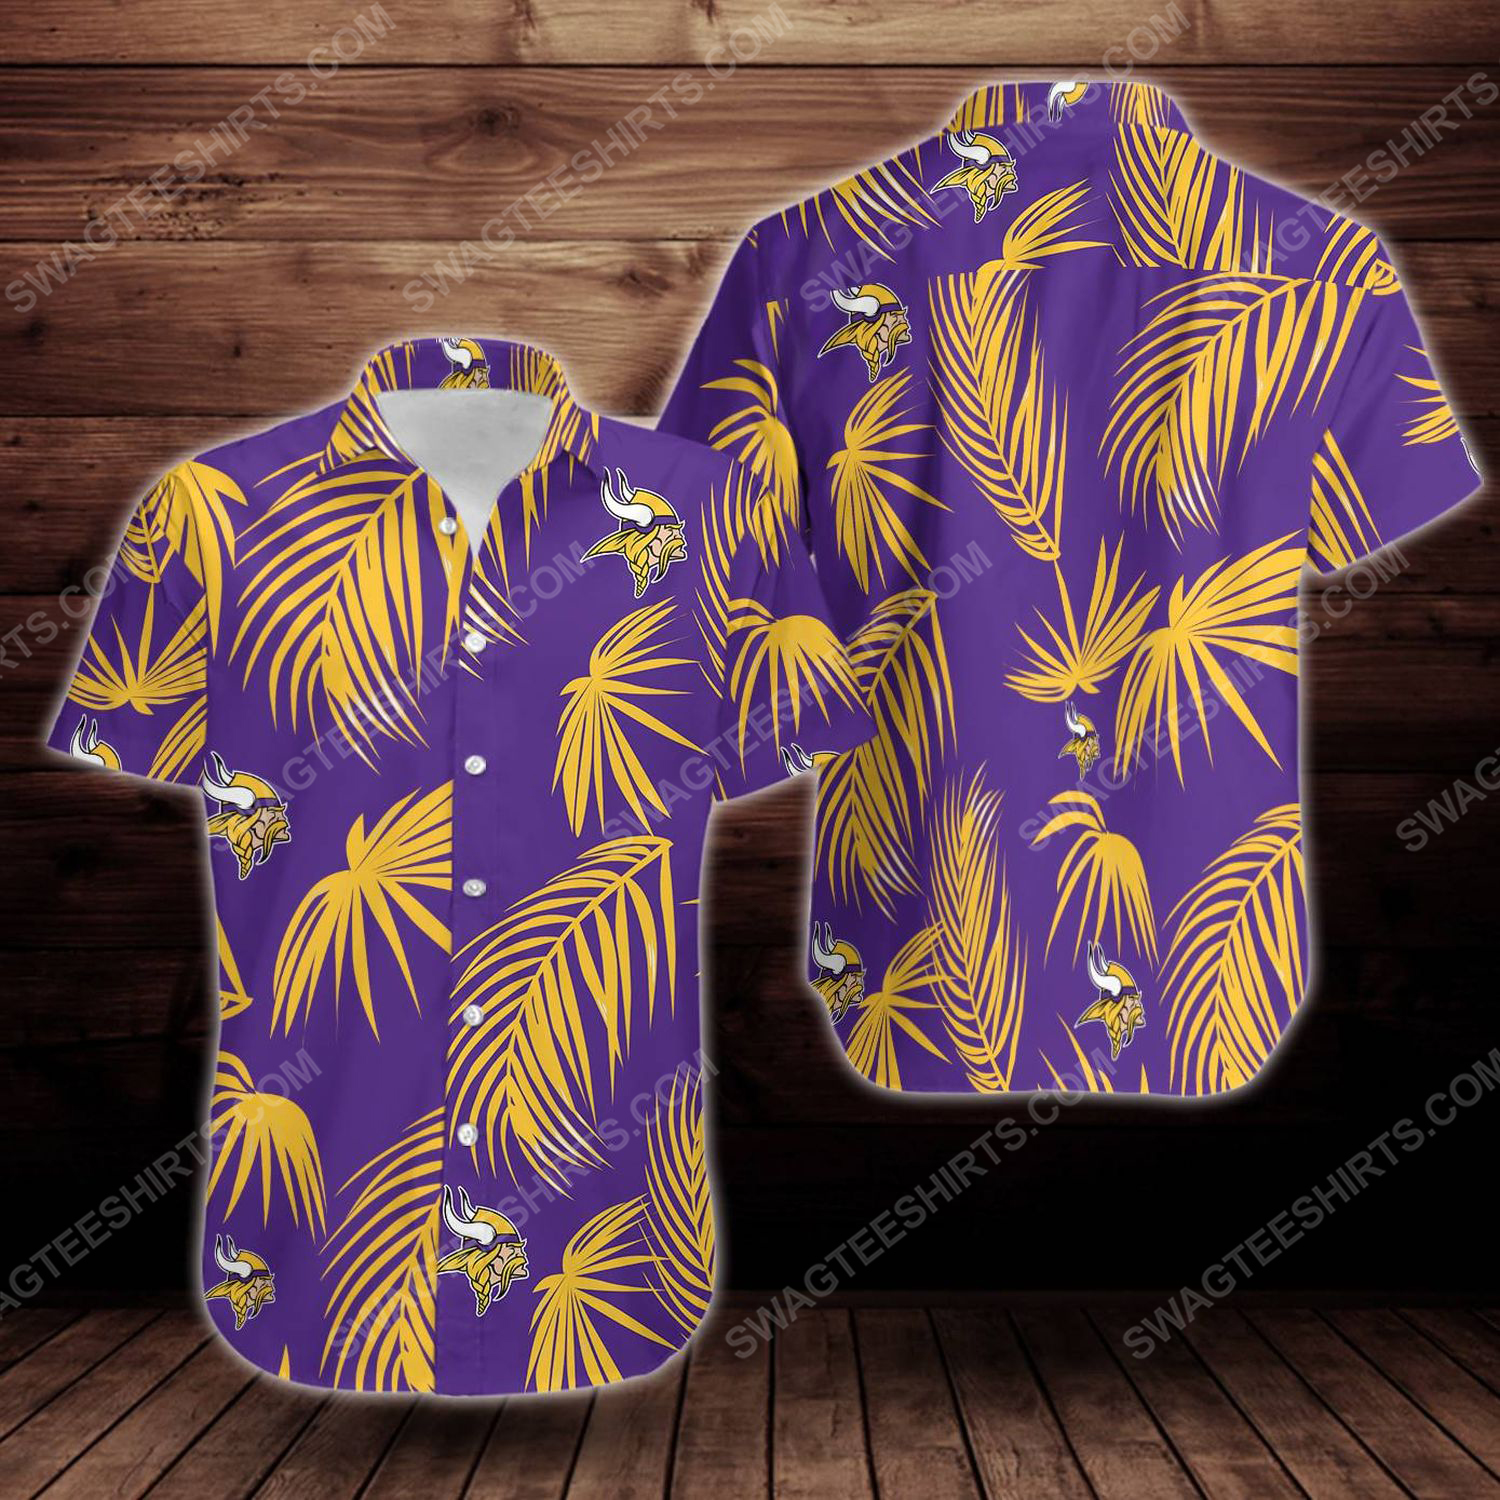 Tropical summer minnesota vikings short sleeve hawaiian shirt 1